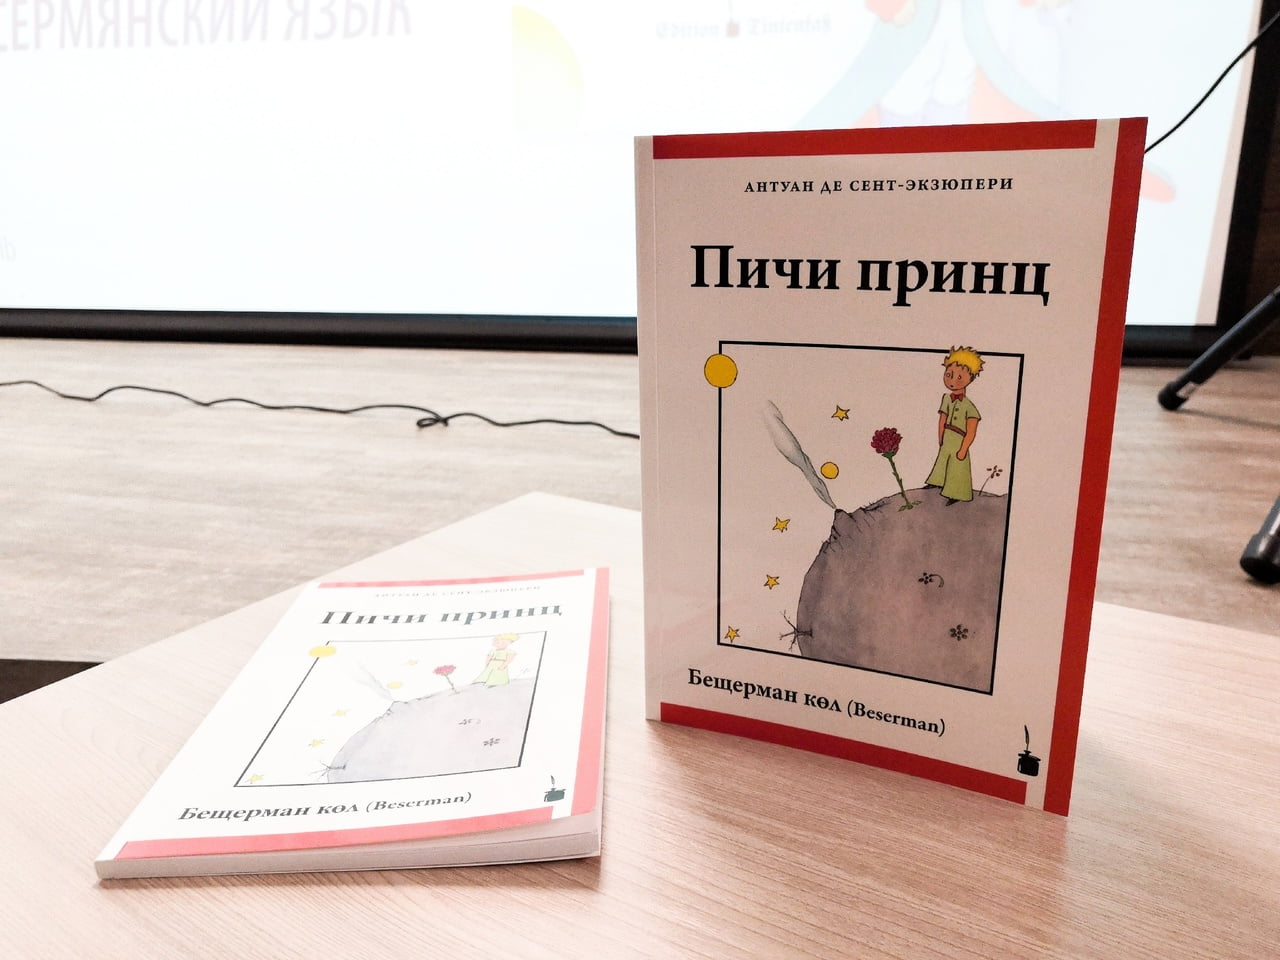 В ижевске состоялась презентация книги «маленький принц» на бесермянском языке 5